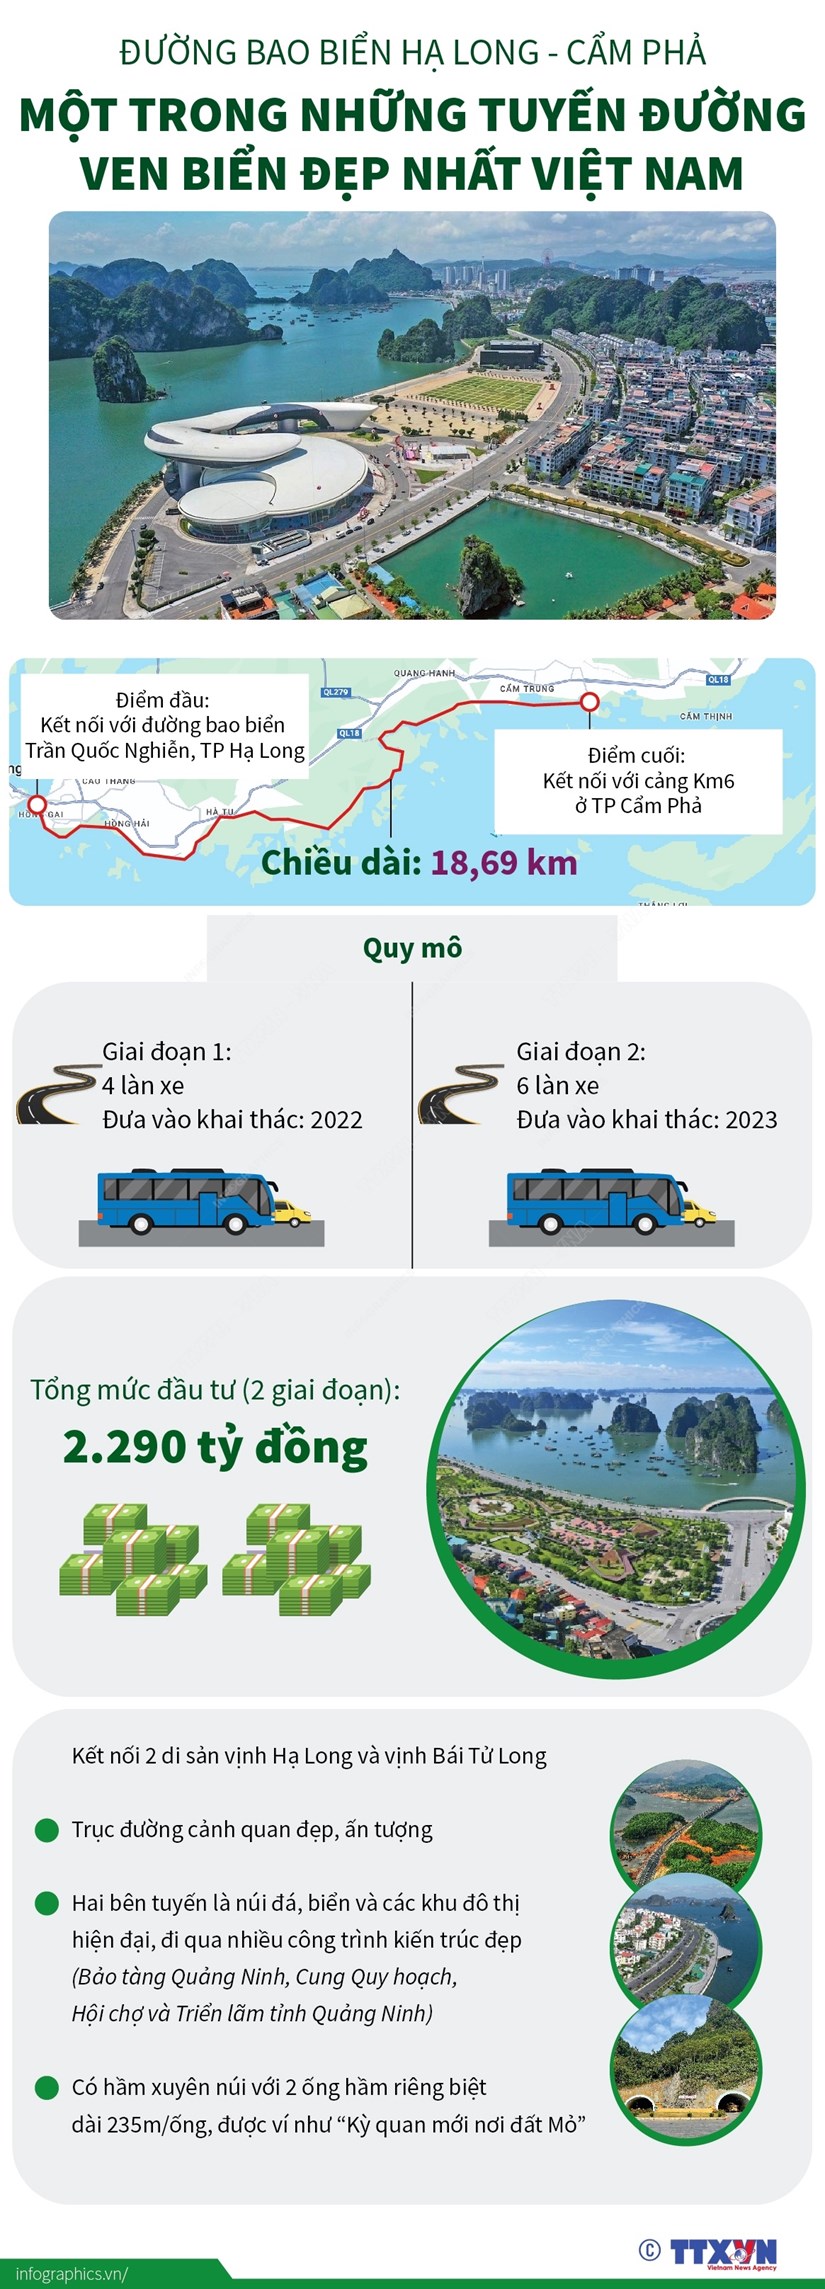 Đường bao biển Hạ Long-Cẩm Phả: Kết nối Vịnh Hạ Long và Bái Tử Long - ảnh 1